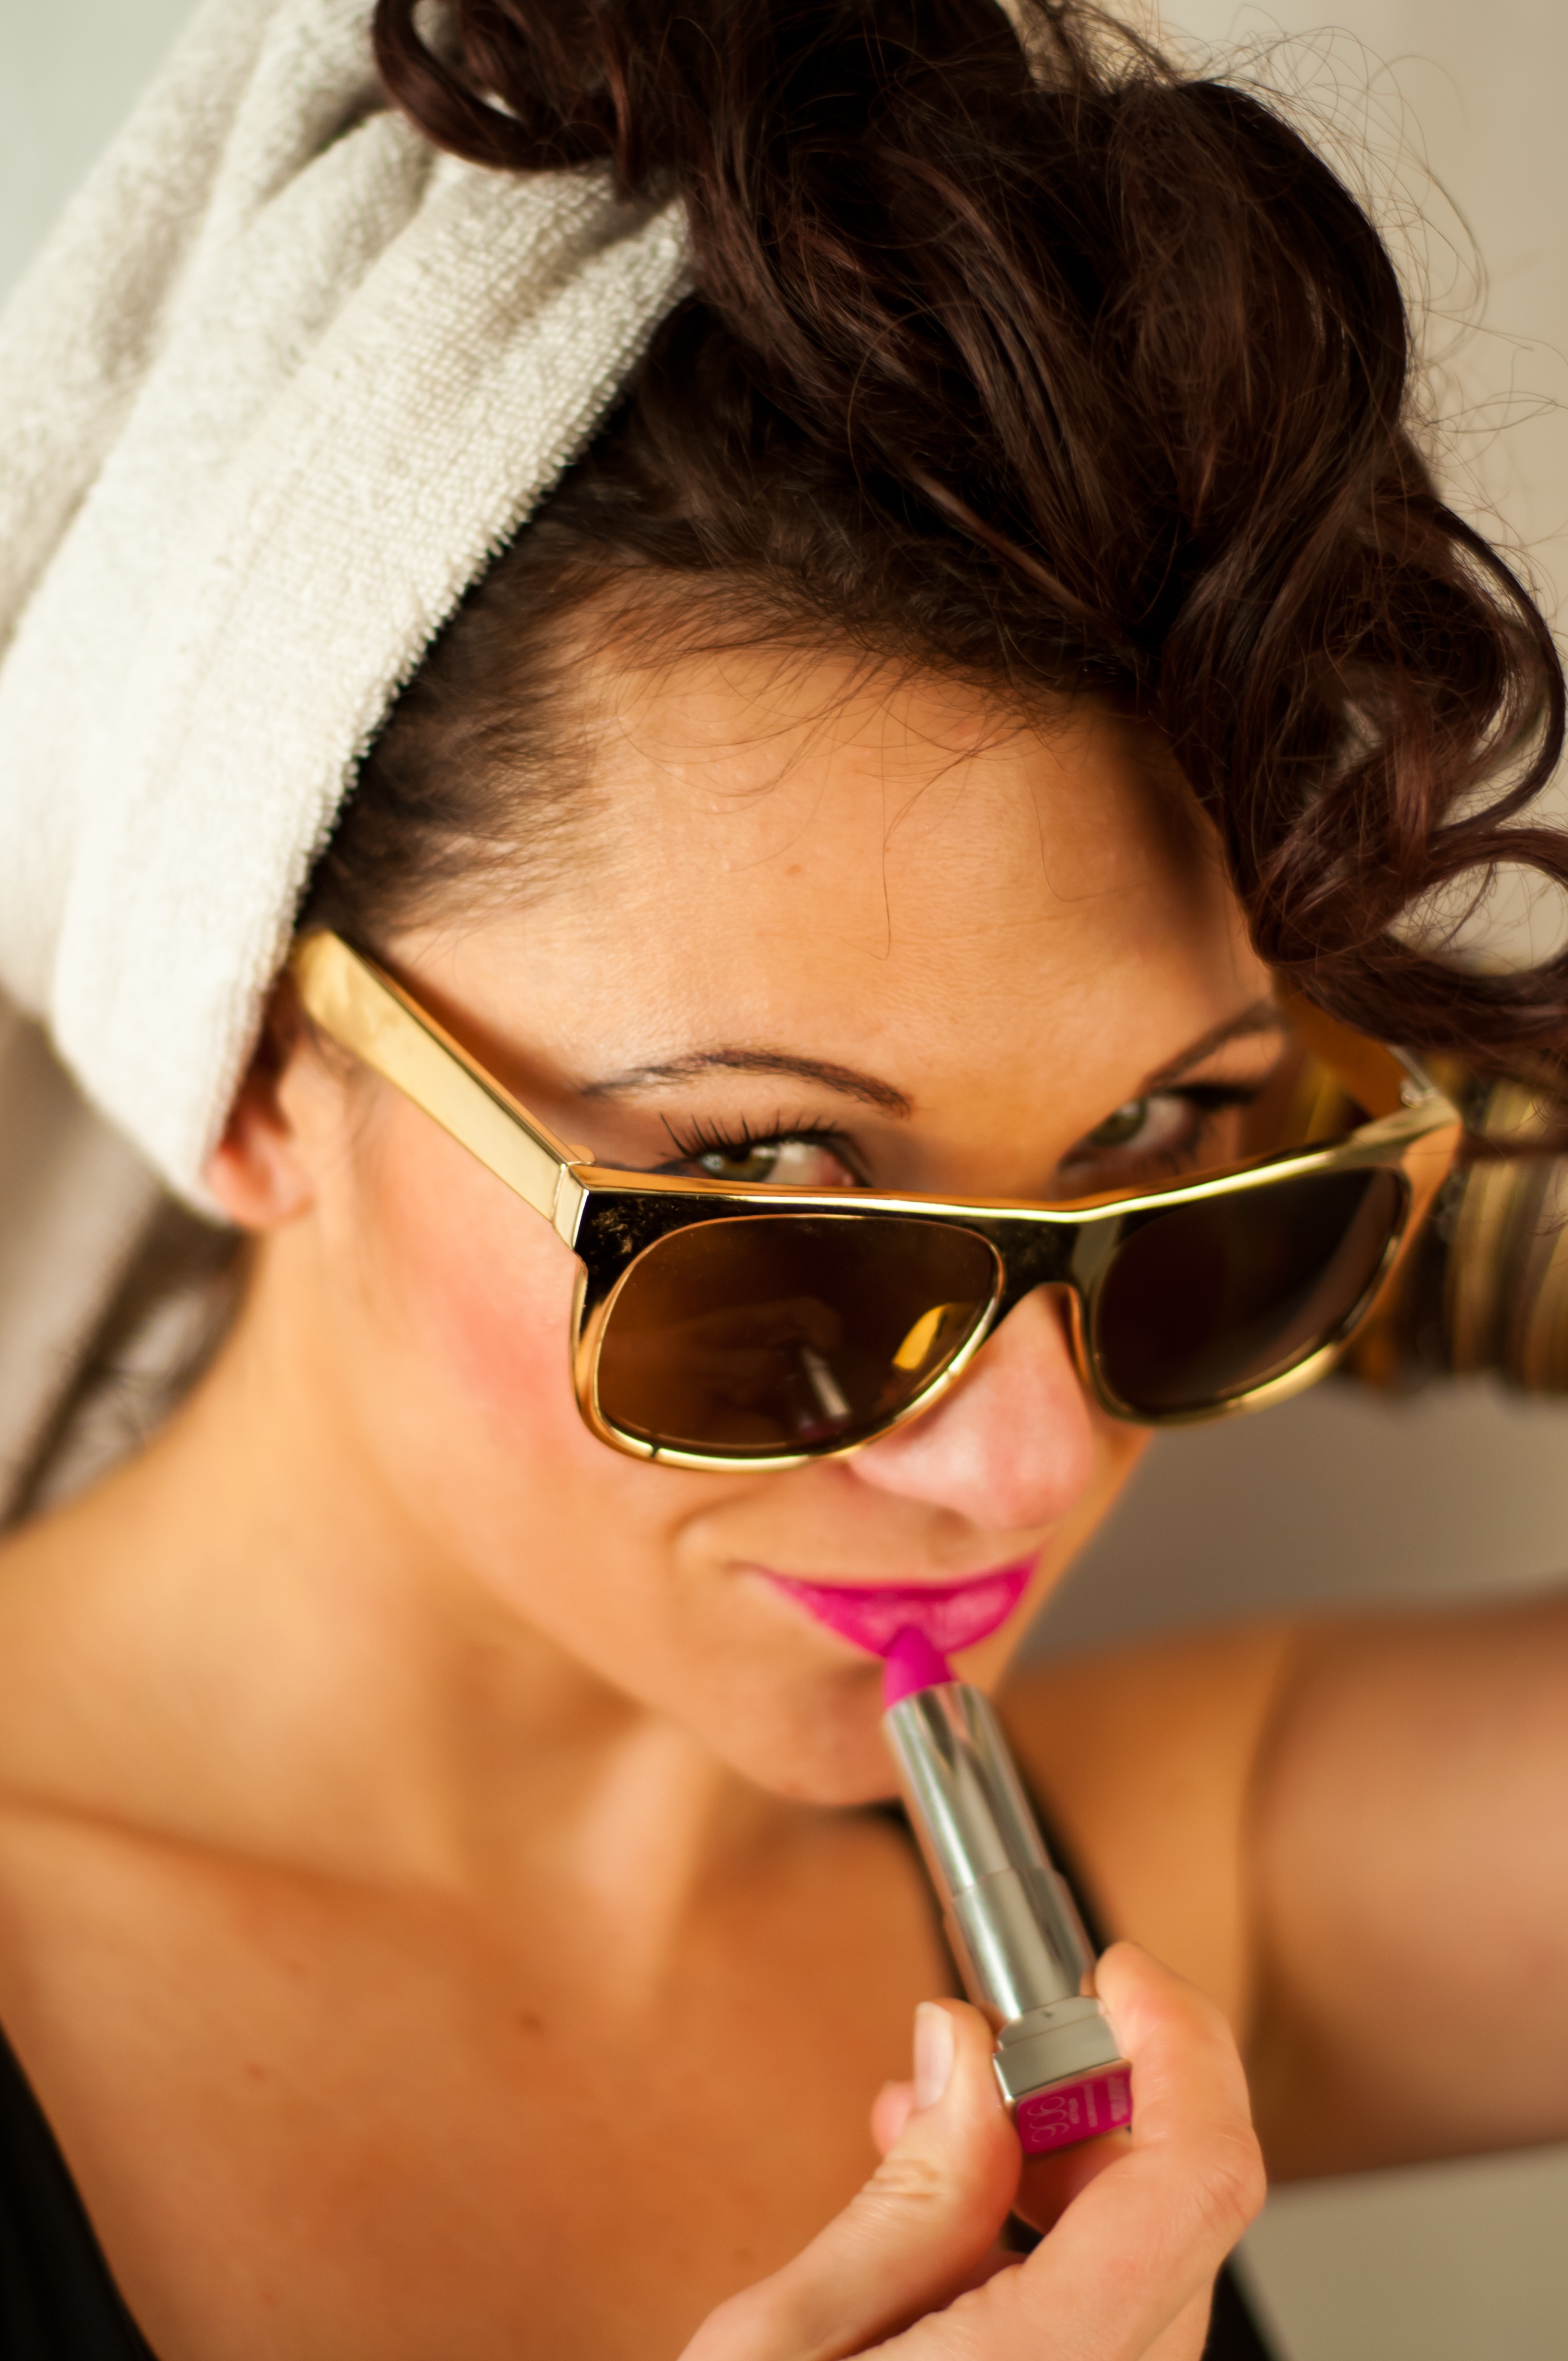 Woman wearing sunglasses photo